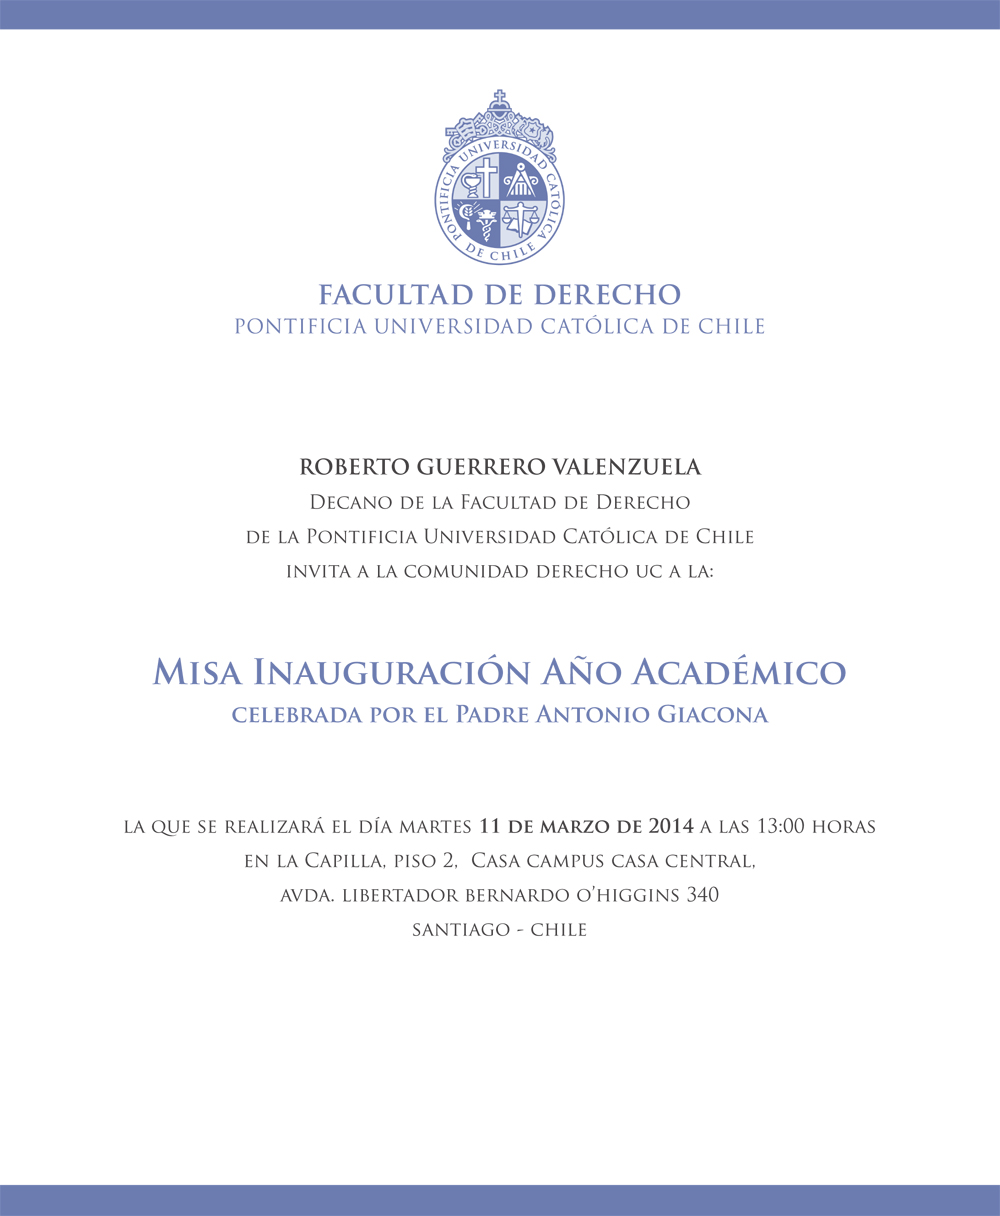 invitación-misa-inauguracion-ano-academico-agenda2